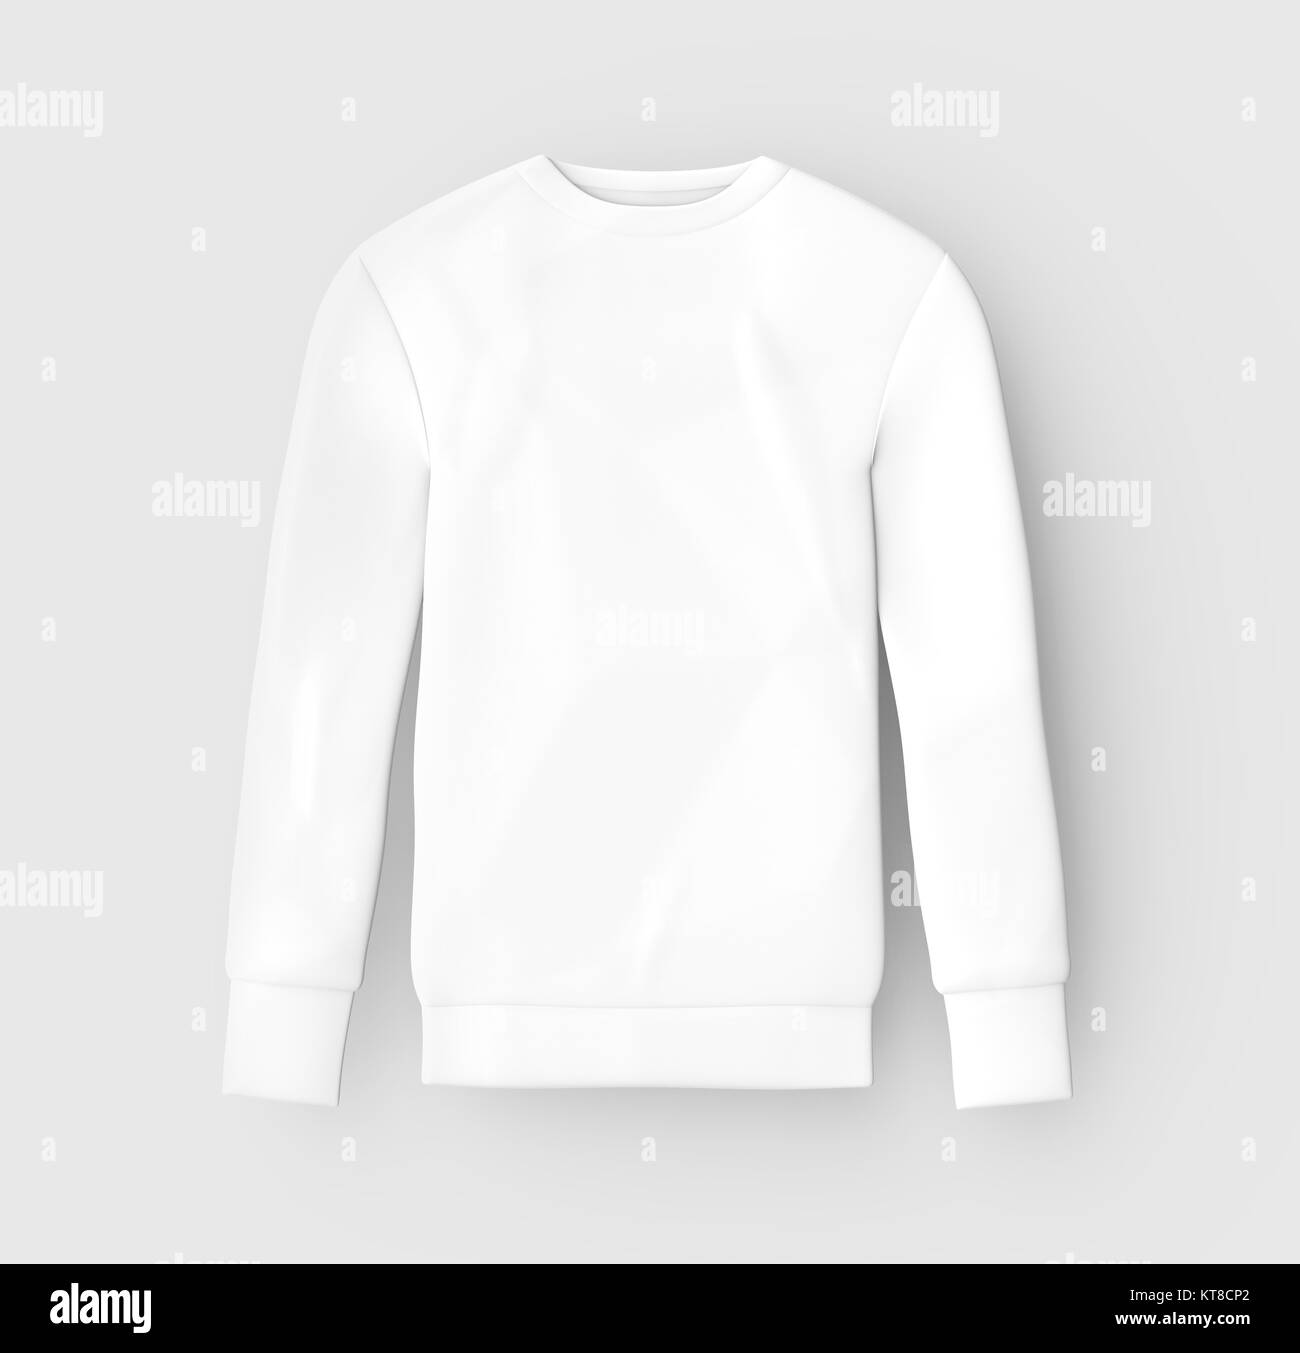 Sweatshirt mockup Vorlage, leere weiße unisex Tuch auf hellgrauem Hintergrund isoliert, 3D-Rendering Stockfoto